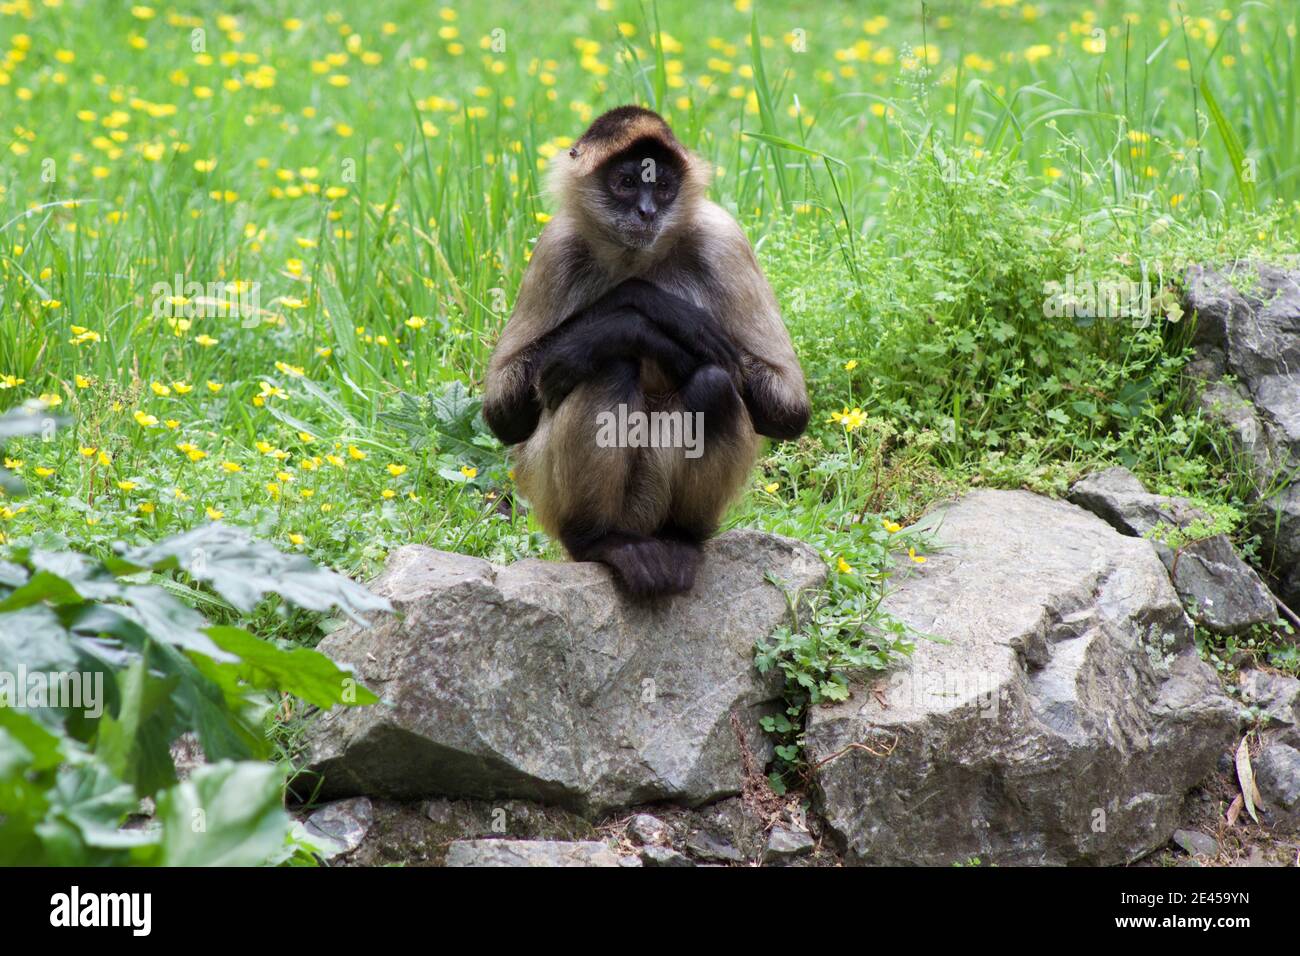 Scimmia ragno con mani incrociate seduti su una roccia dentro parte anteriore dell'erba e dei bicchierini Foto Stock